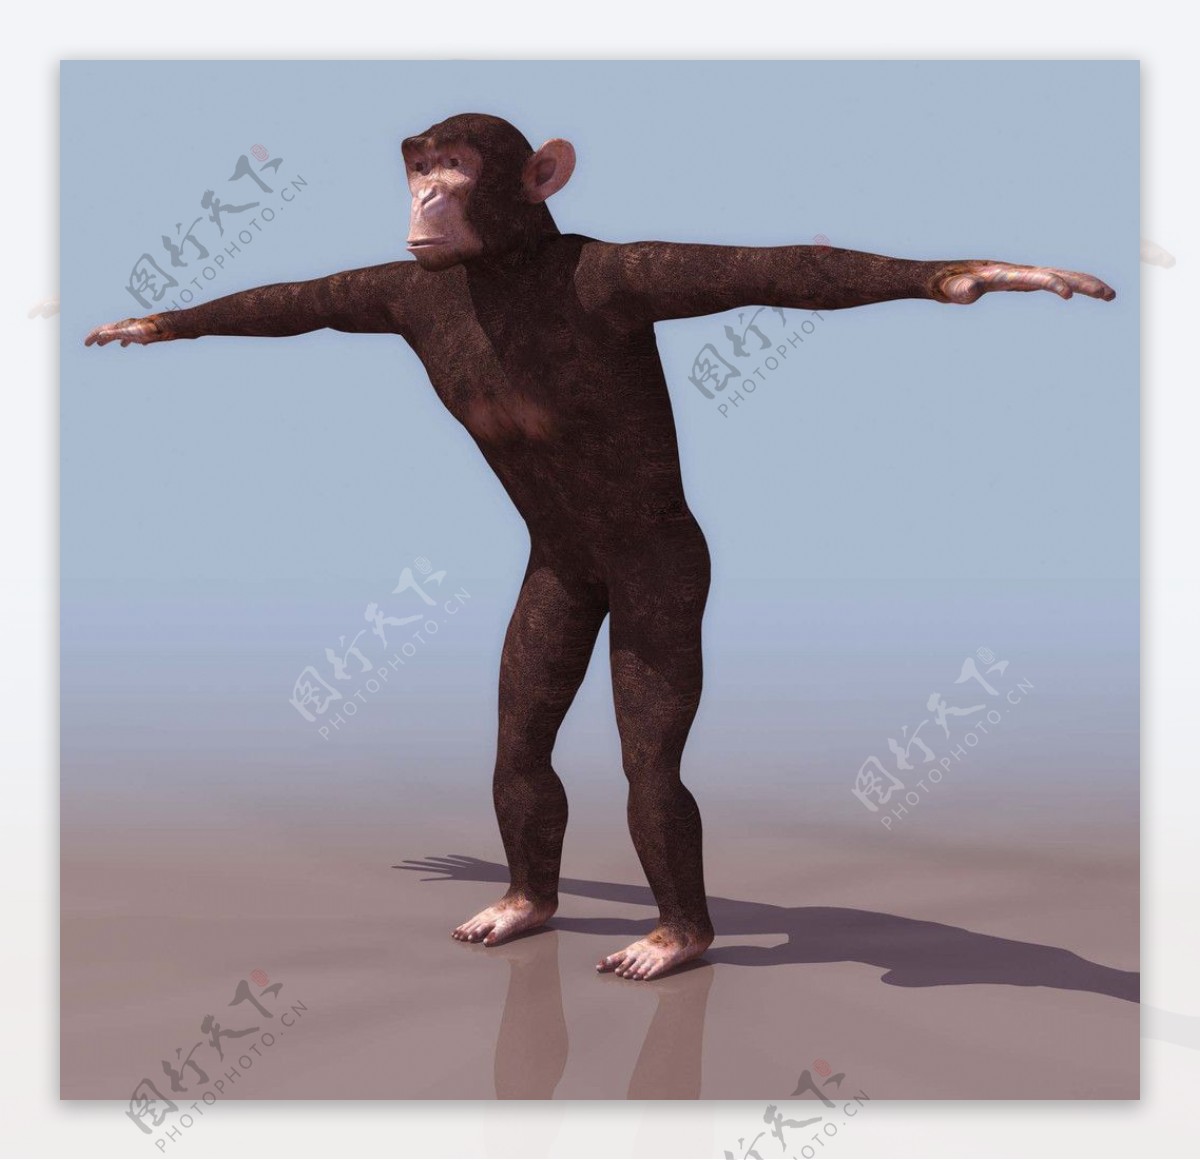 3D模型图库大猩猩猴子图片